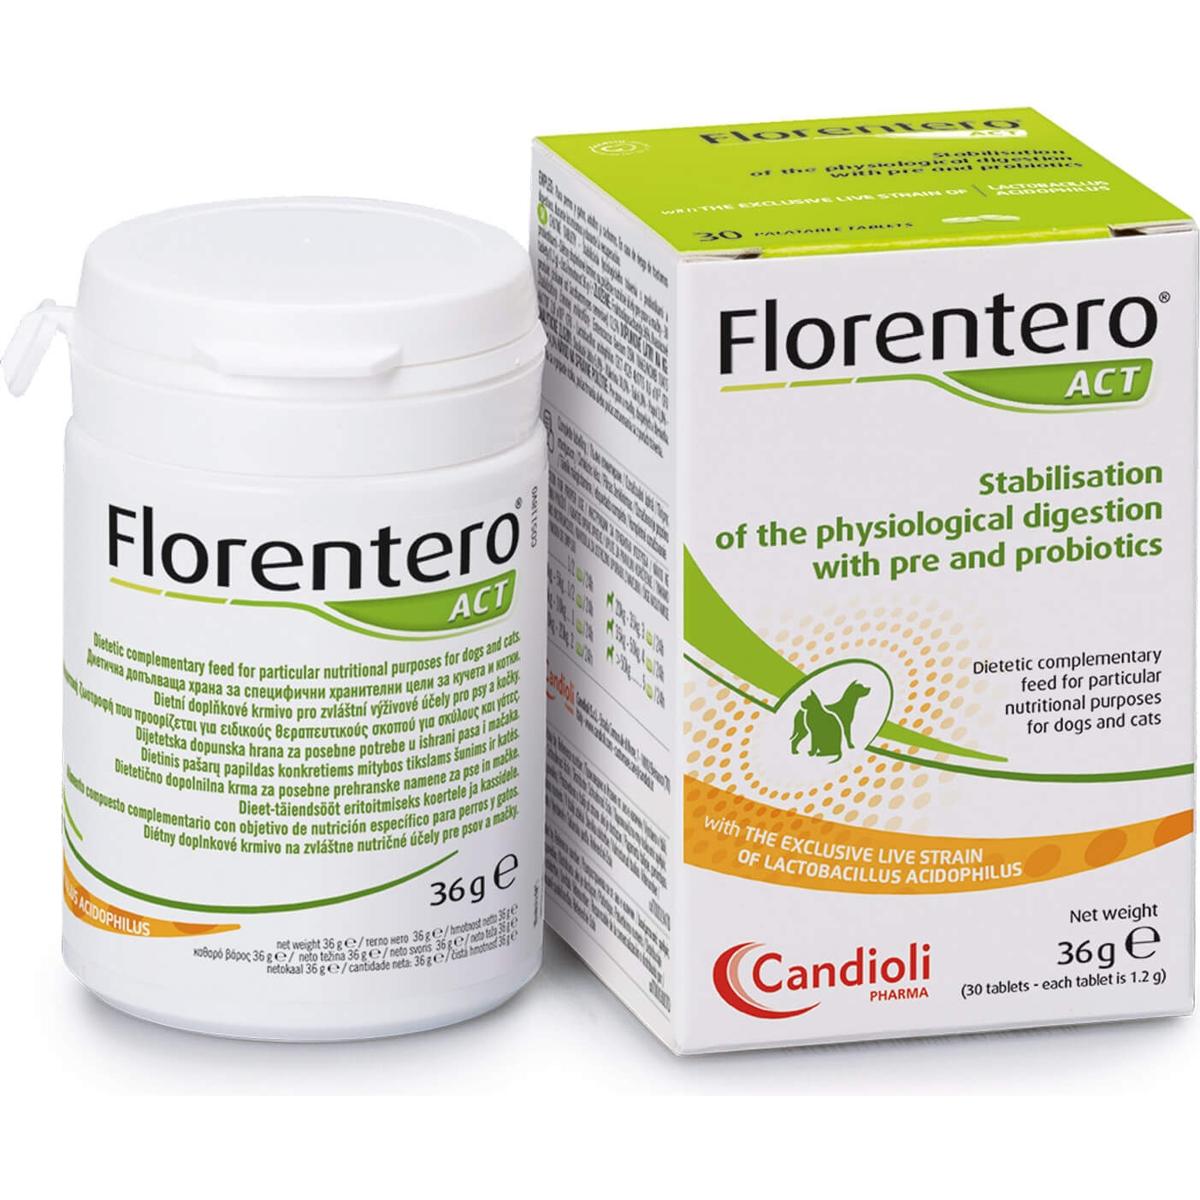 CANDIOLI Florentero ACT Stabilizacija varenja za pse i mačke s pre i probioticima, 30 tableta